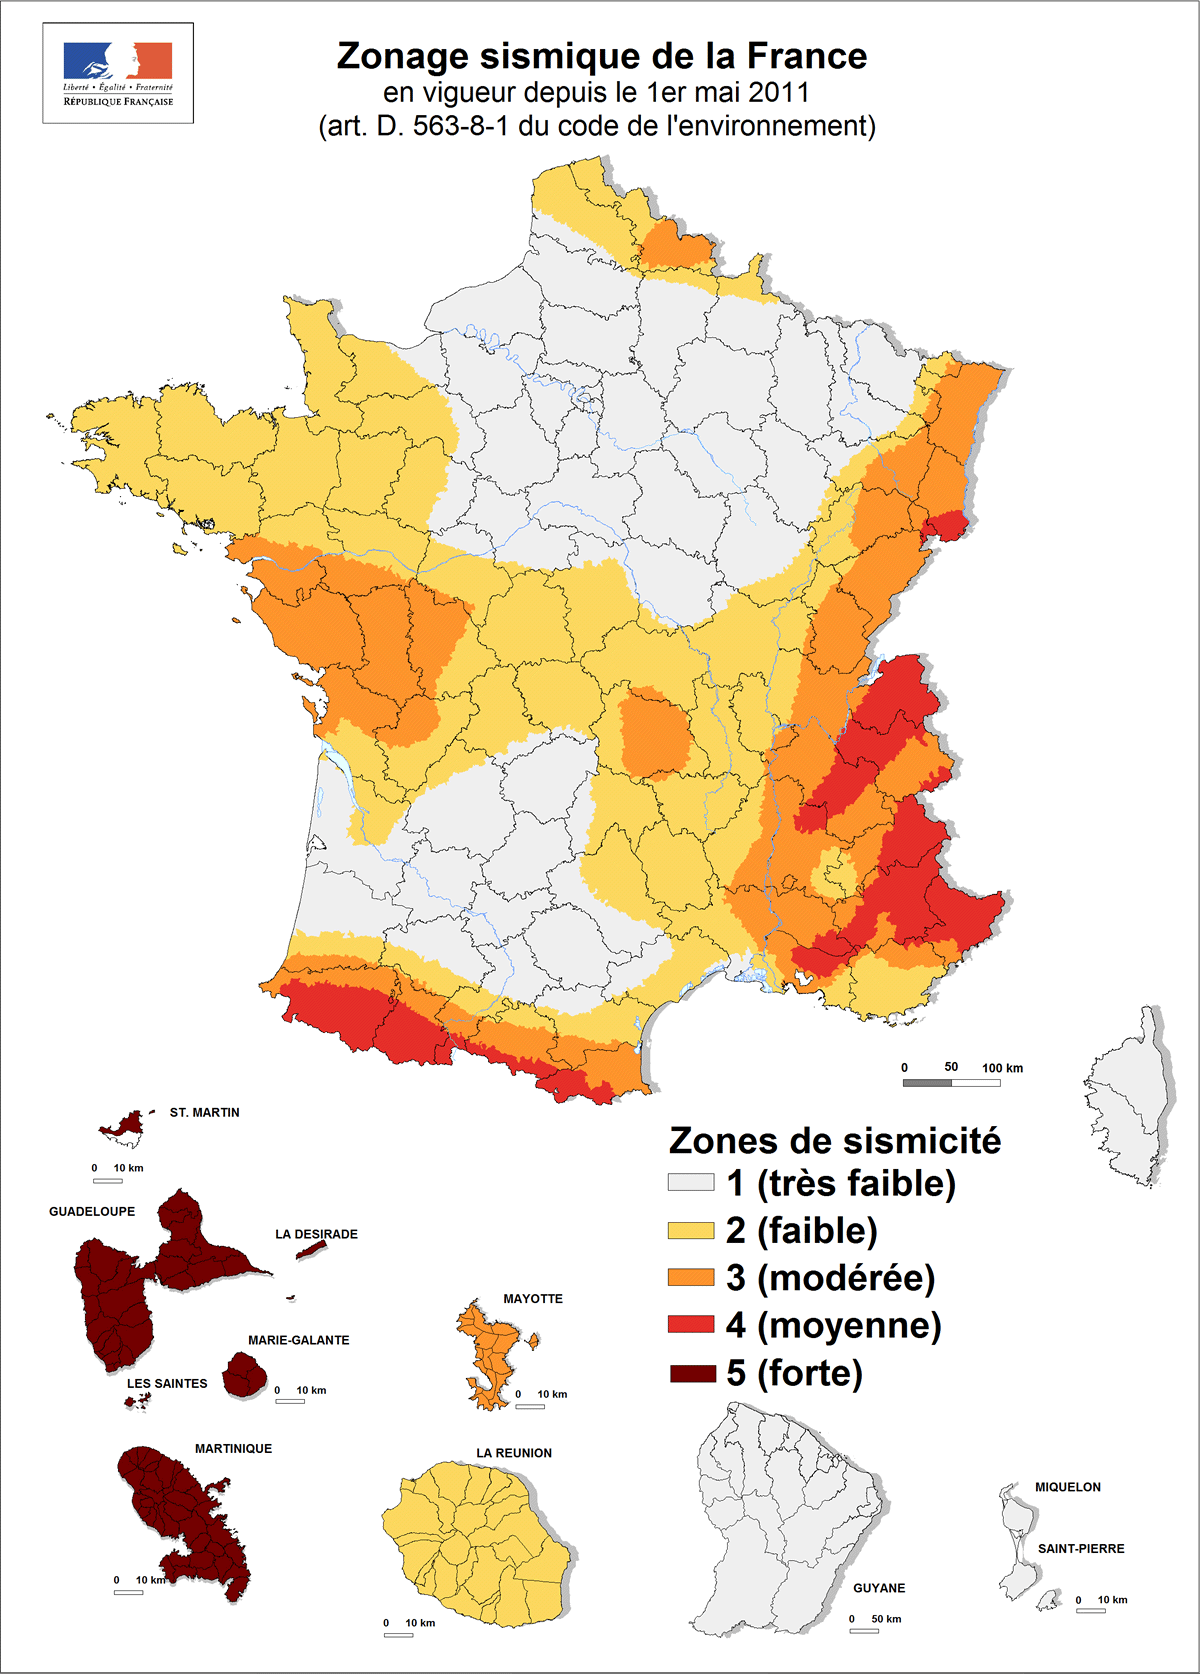 Zonage sismique en France